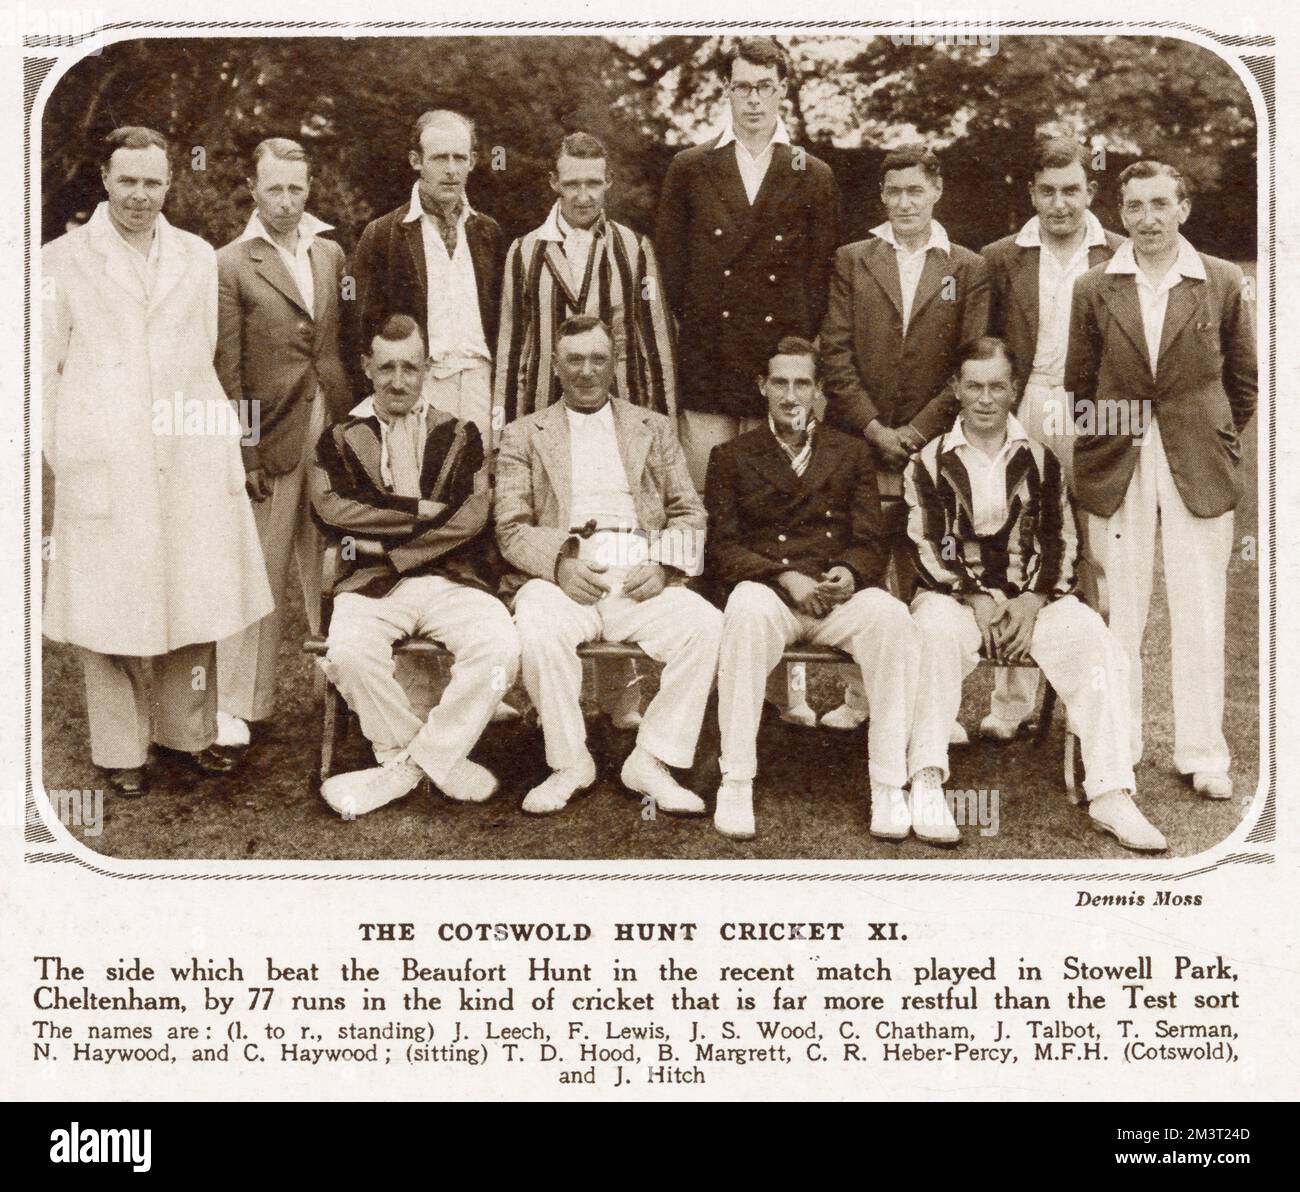 Photo de l'équipe de cricket - la chasse Cotswold XI qui a battu la chasse de Beaufort dans un match à Stowell Park, Cheltenham par 77 courses. Banque D'Images